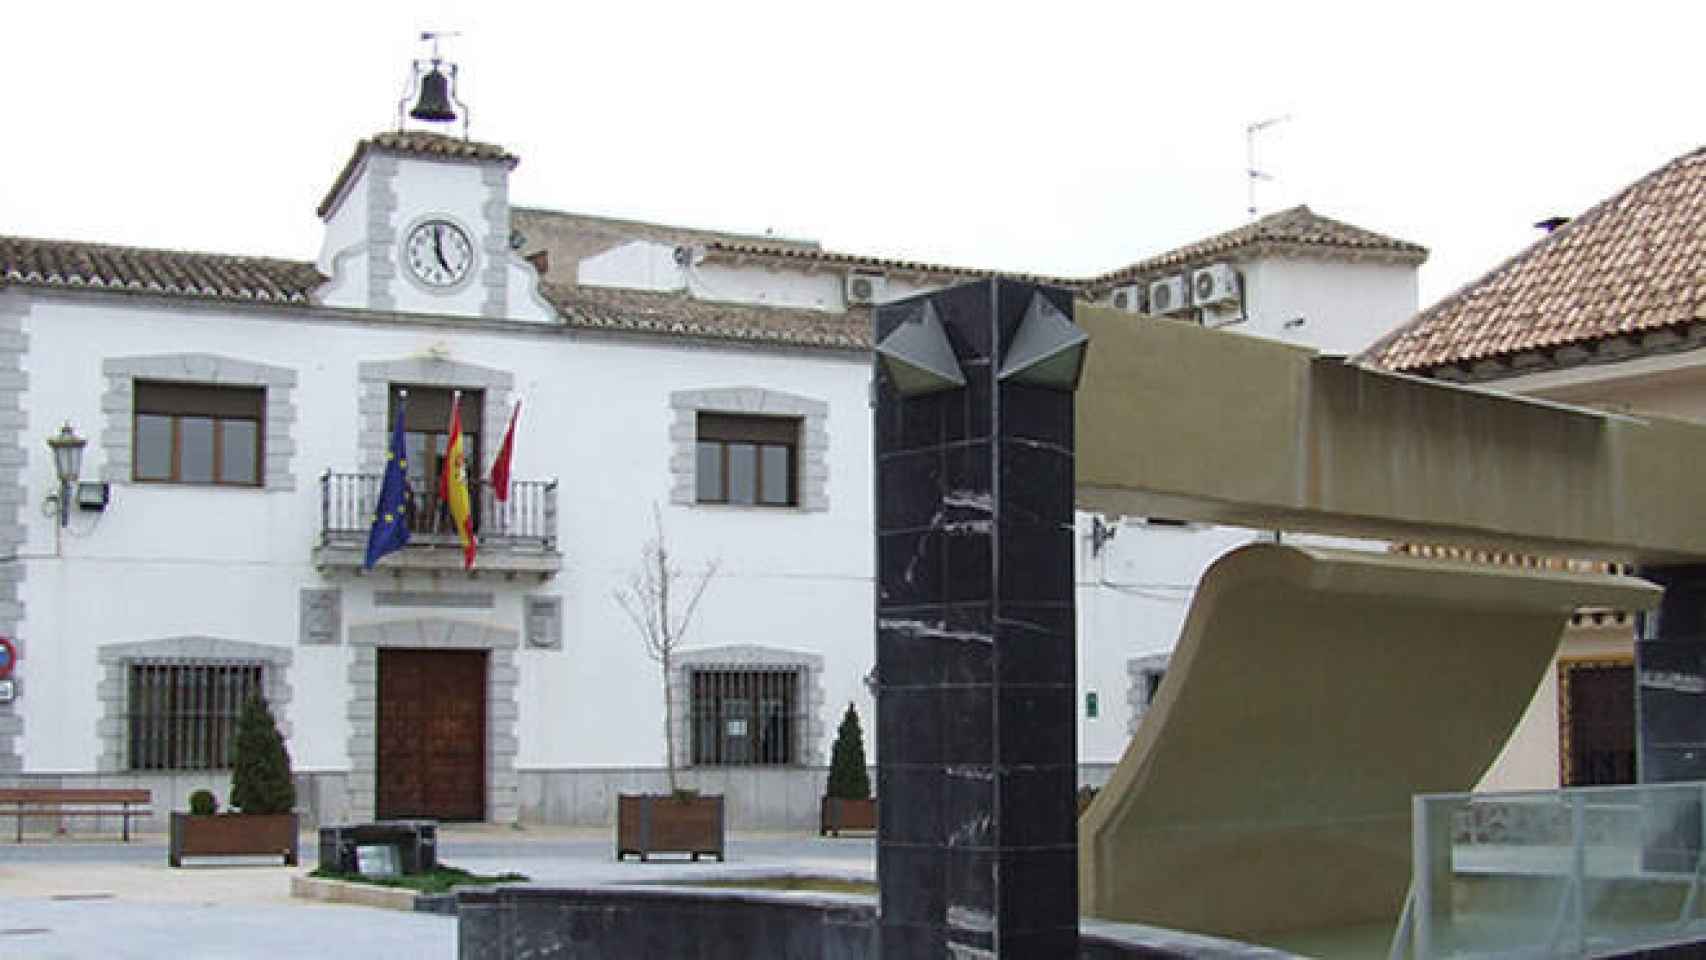 FOTO: Ayuntamiento de Miguel Esteban.